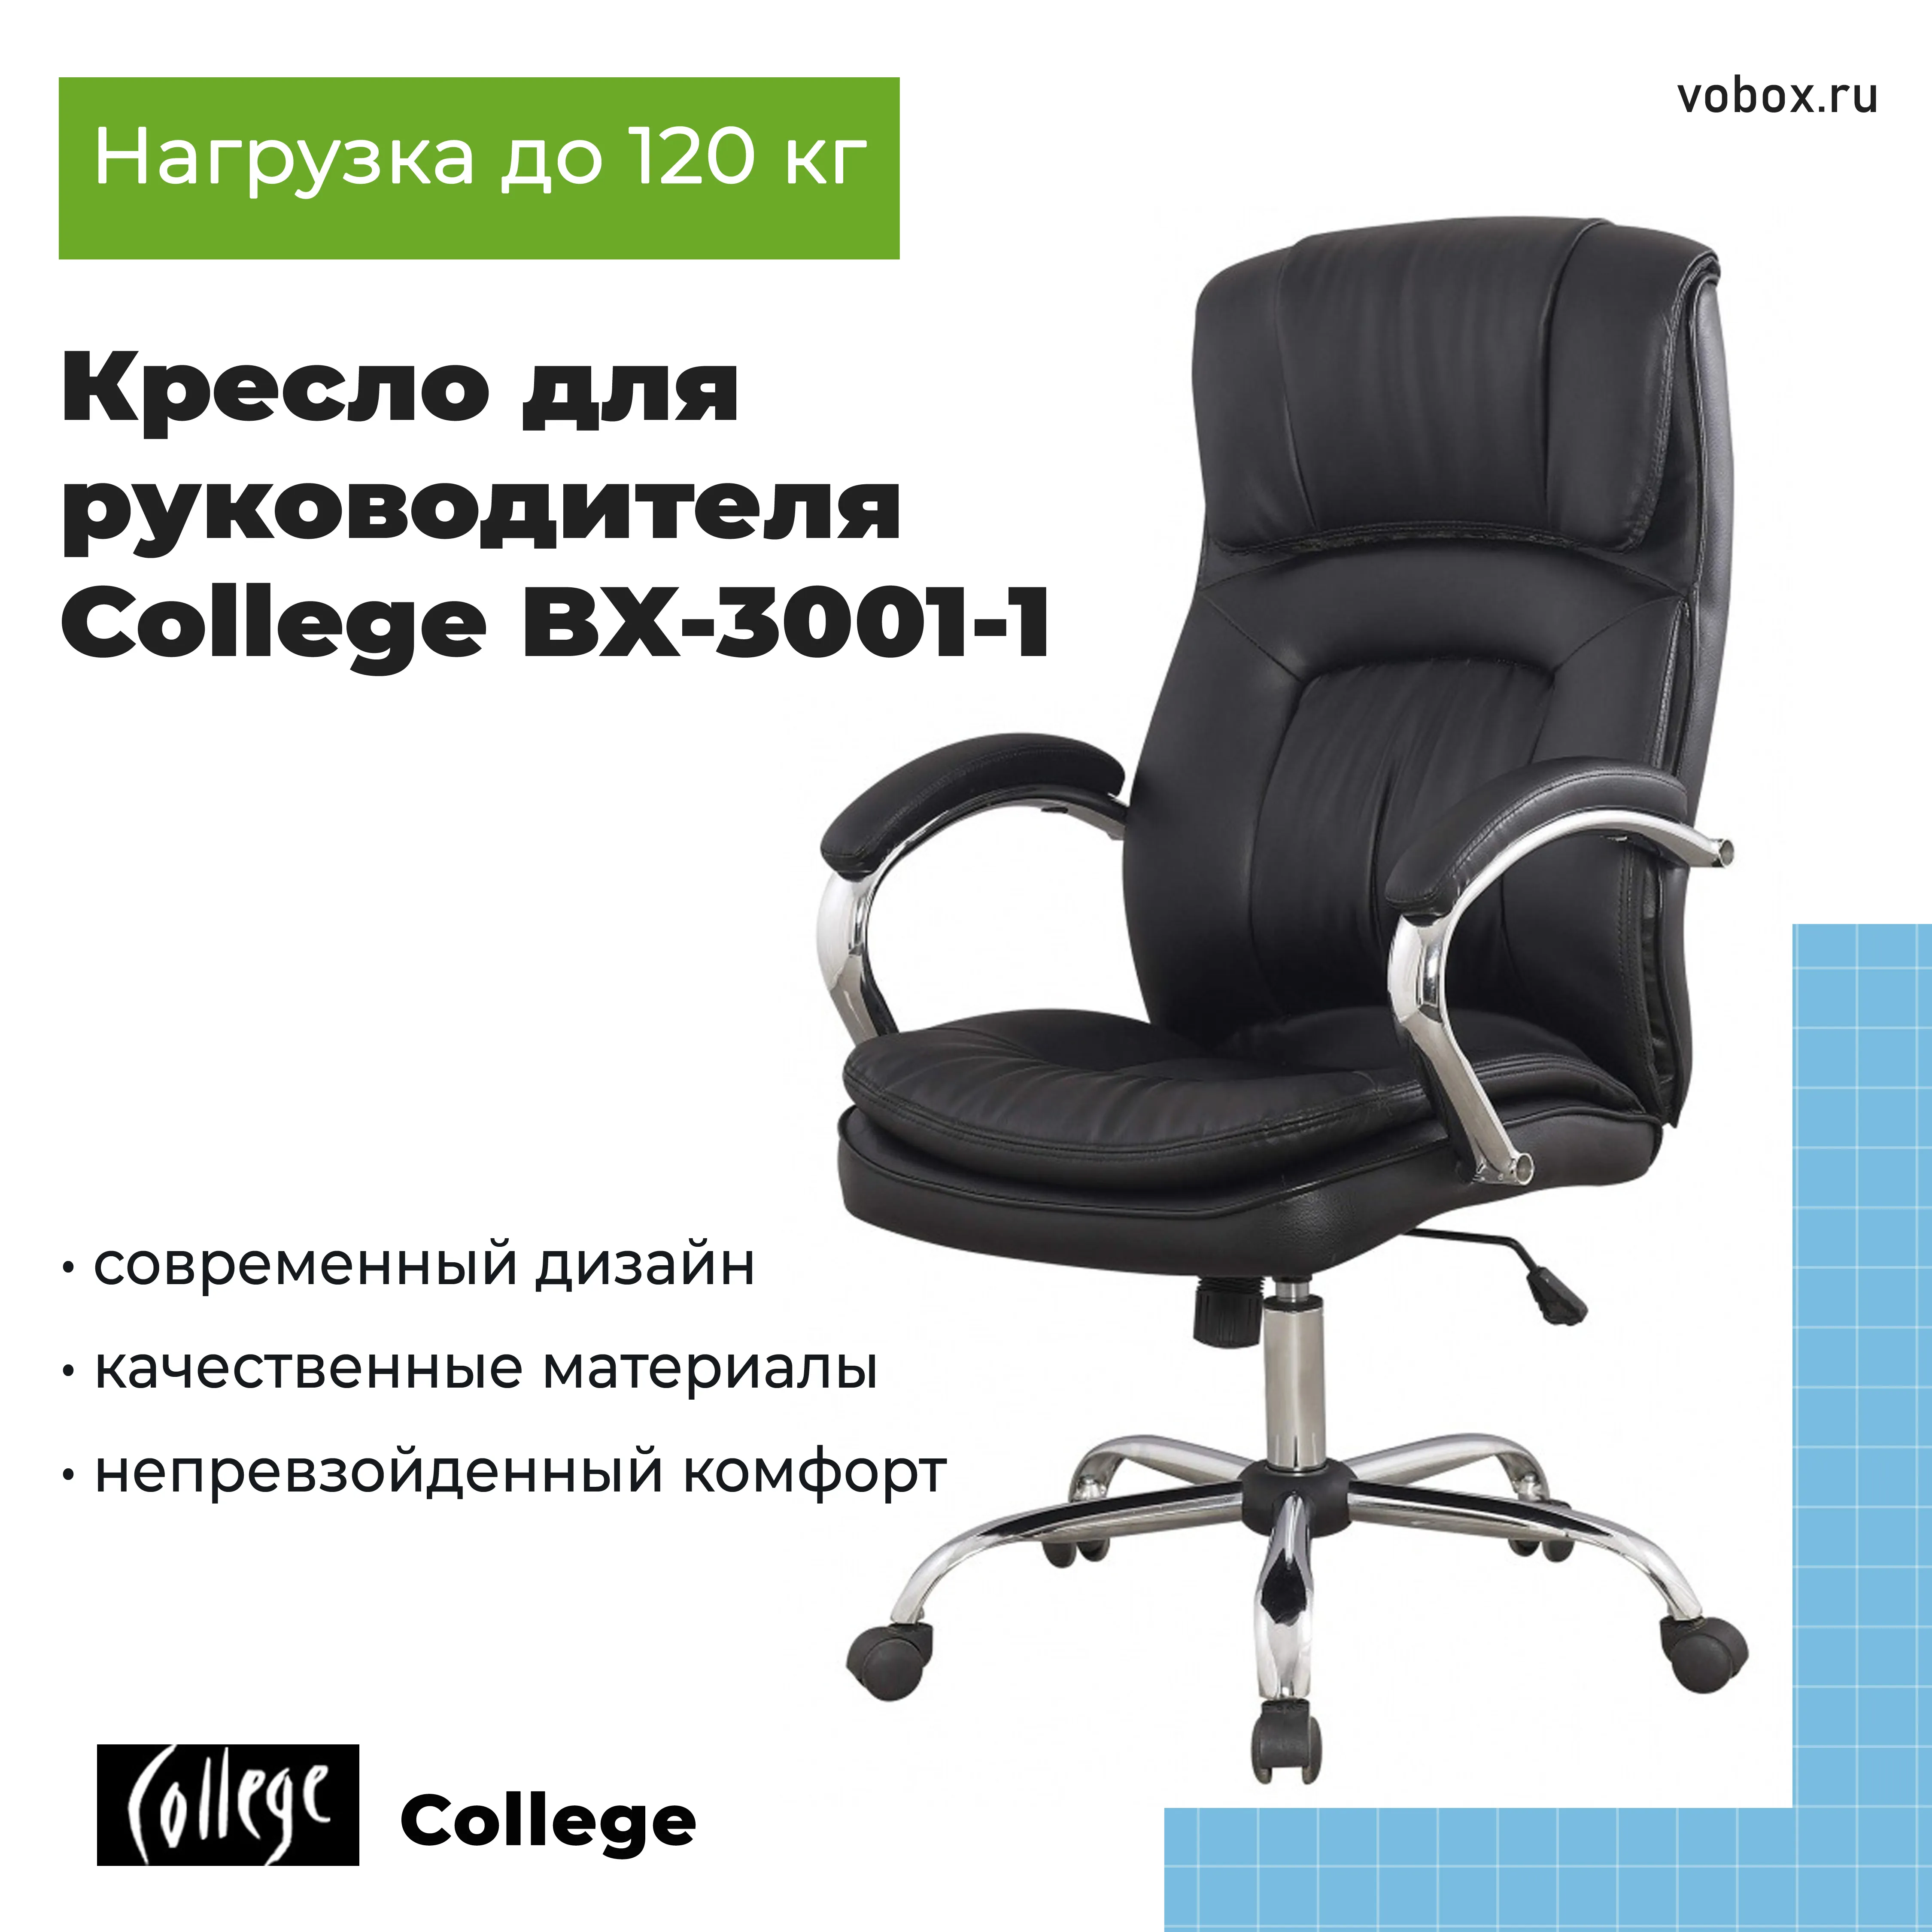 Кресло для руководителя College BX-3001-1 Черный